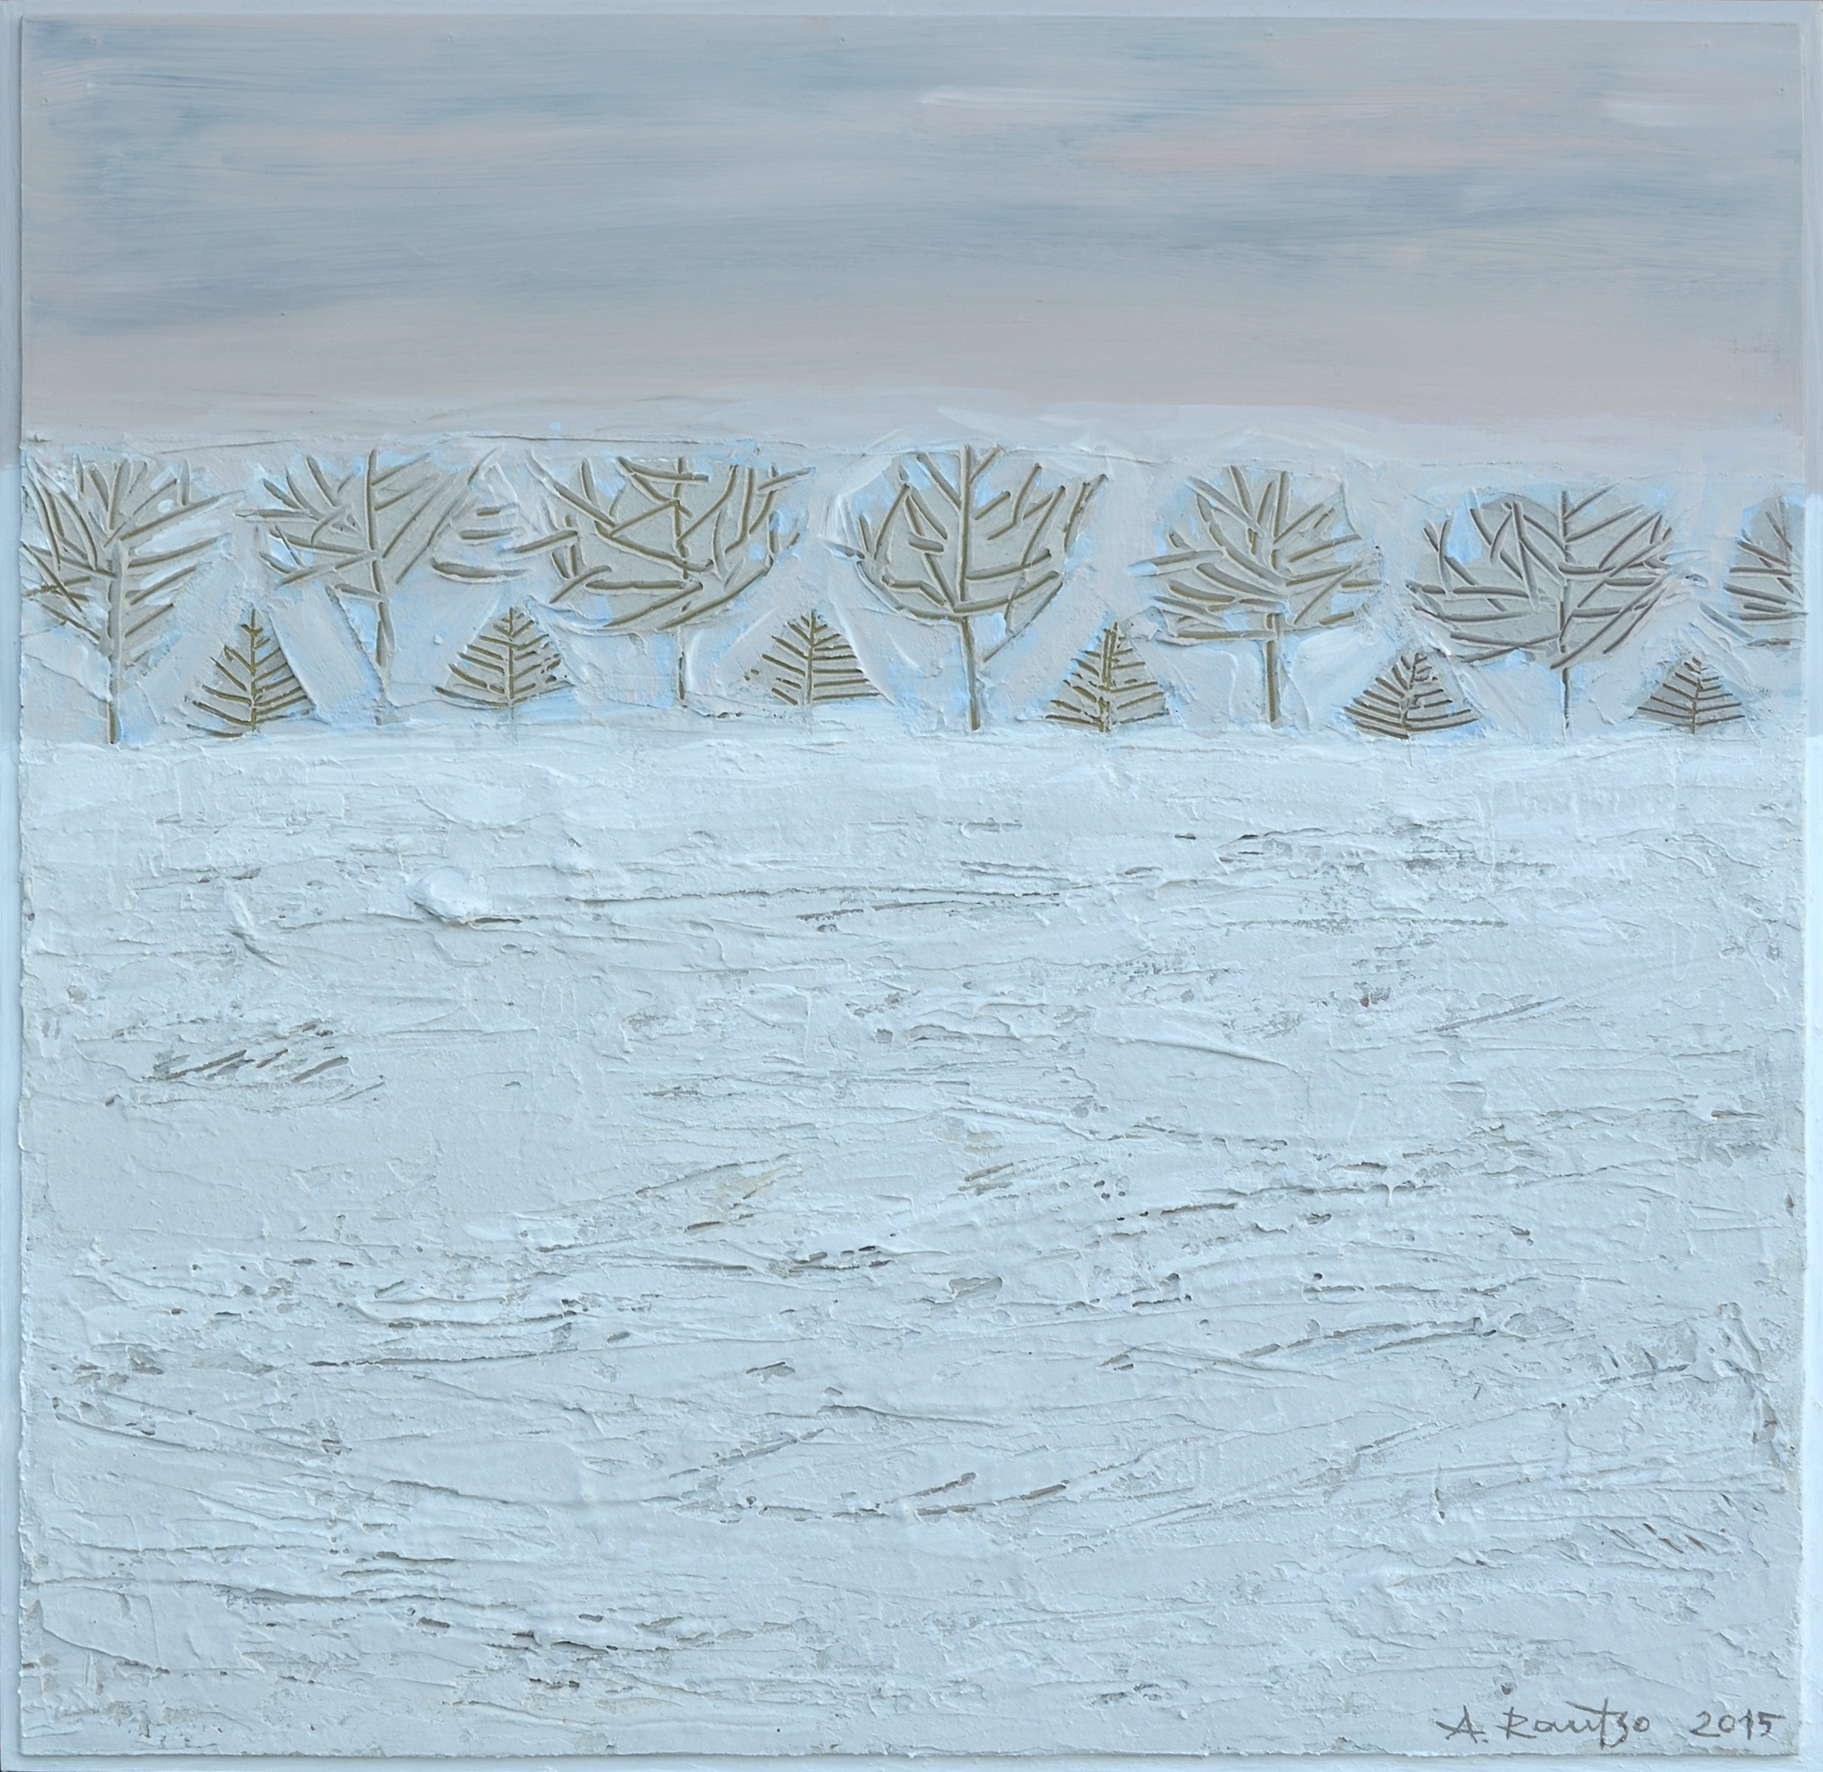 Üle valge välja (2015)
50x50 cm